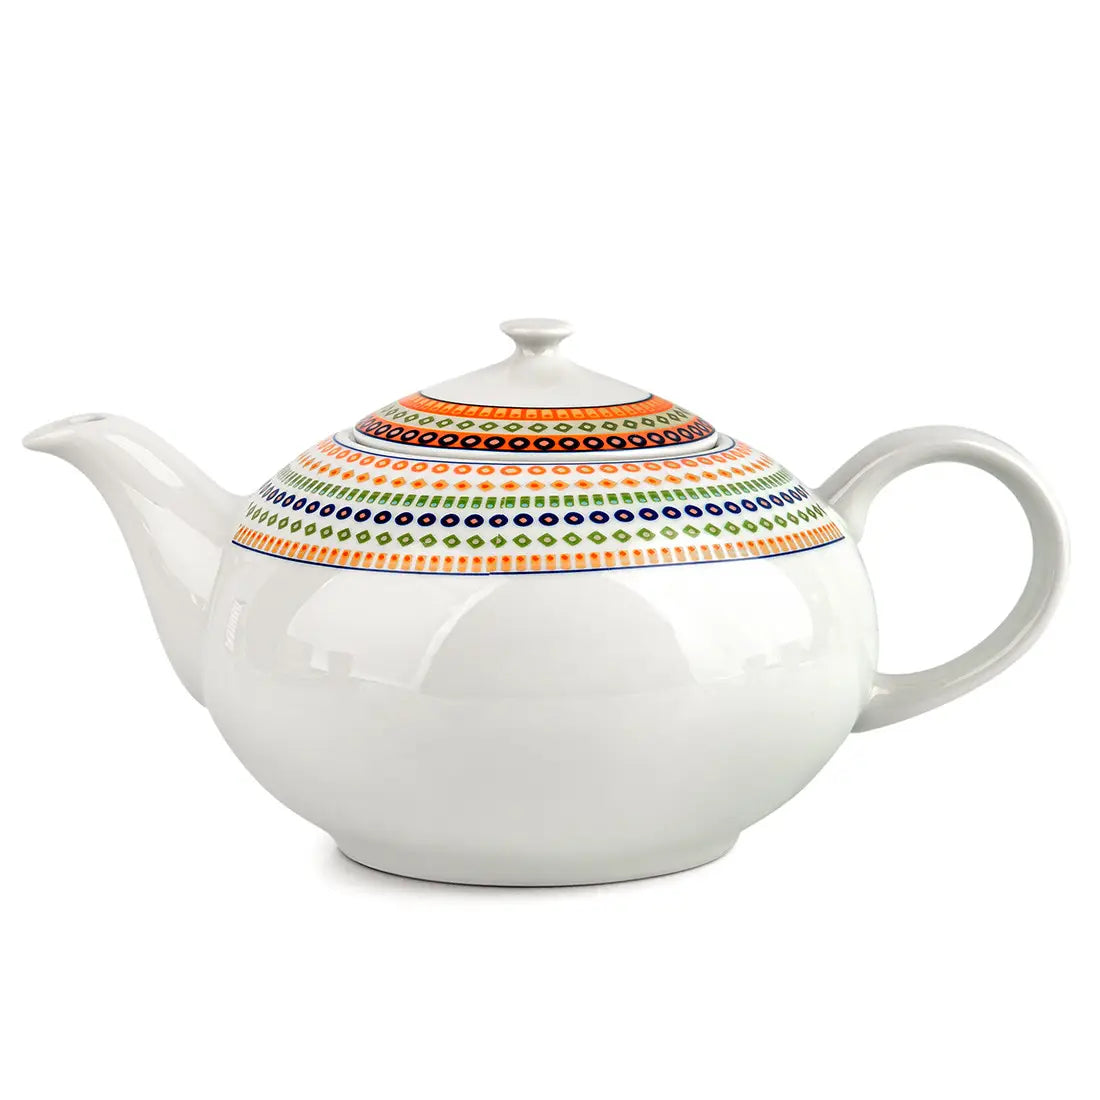 Antique Mosaic Tea Pot 1.2L